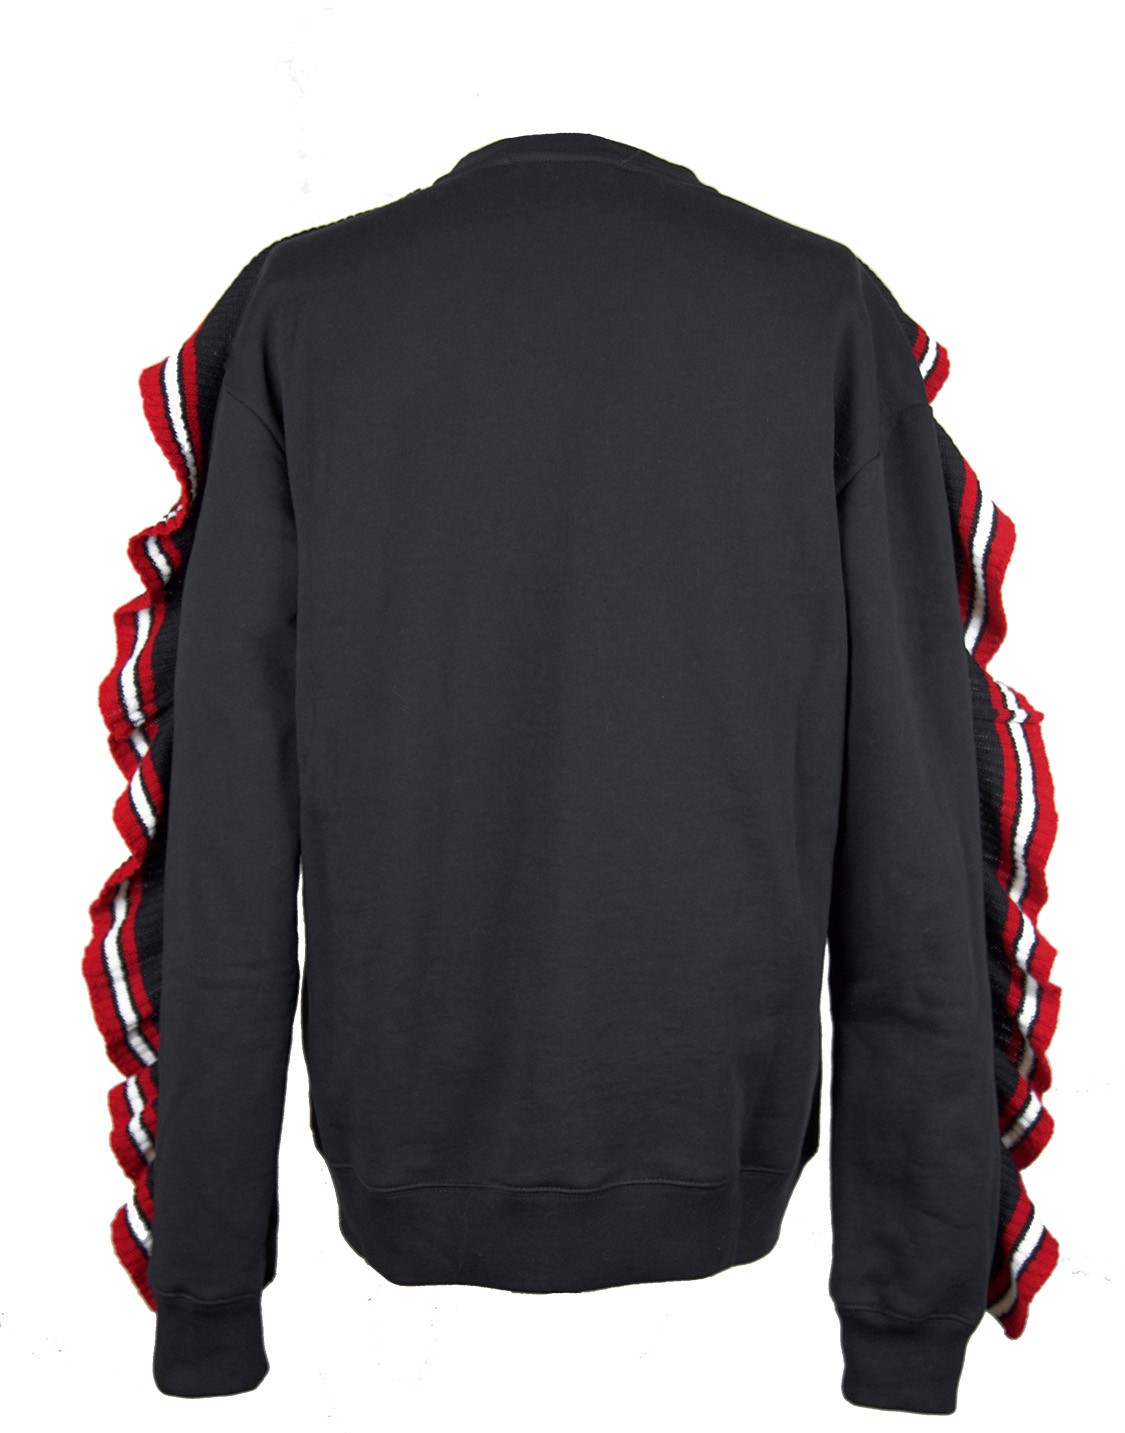 shop MSGM Saldi Felpe: Felpa MSGM, nera, girocollo, manica lunga, rouches rosse e bianche in maglia, logo in maglia sul davanti.

Composizione: 100% cotone. number 1026